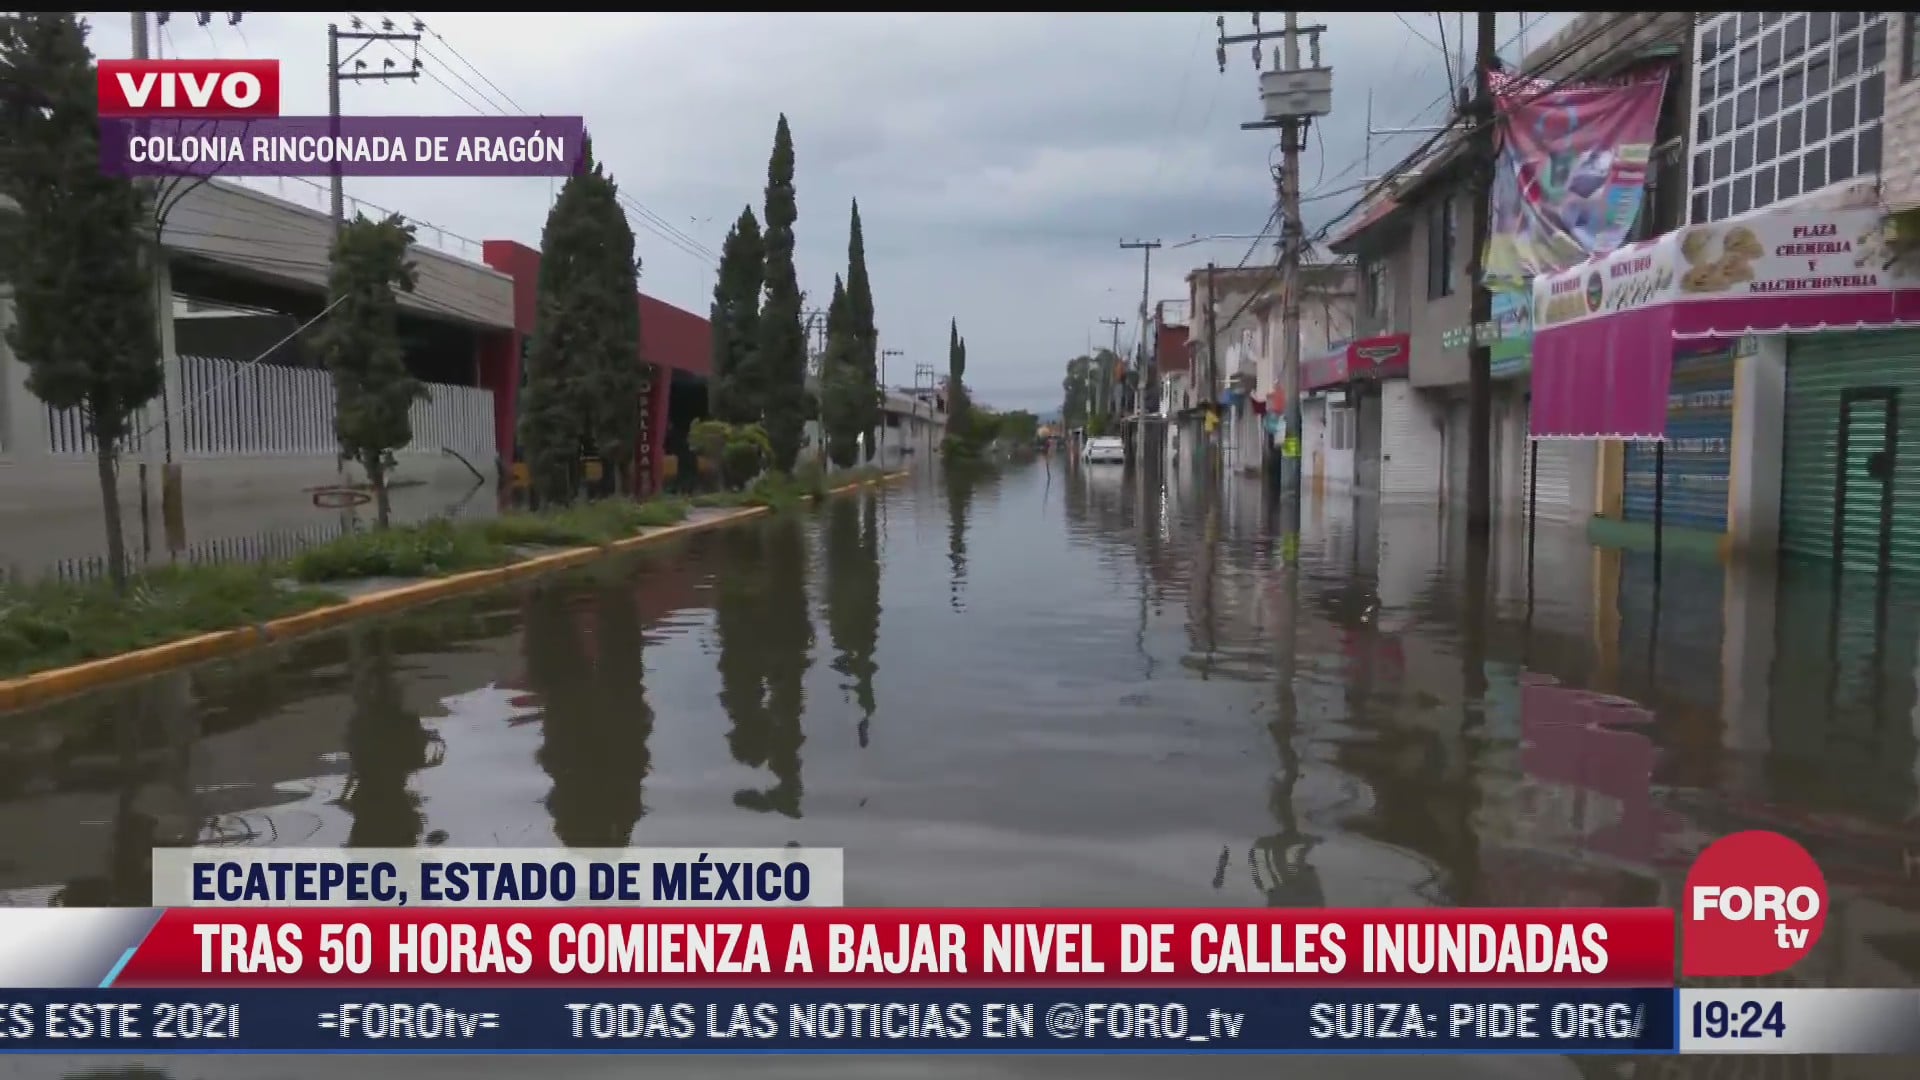 continuan las inundaciones en ecatepec en el estado de mexico